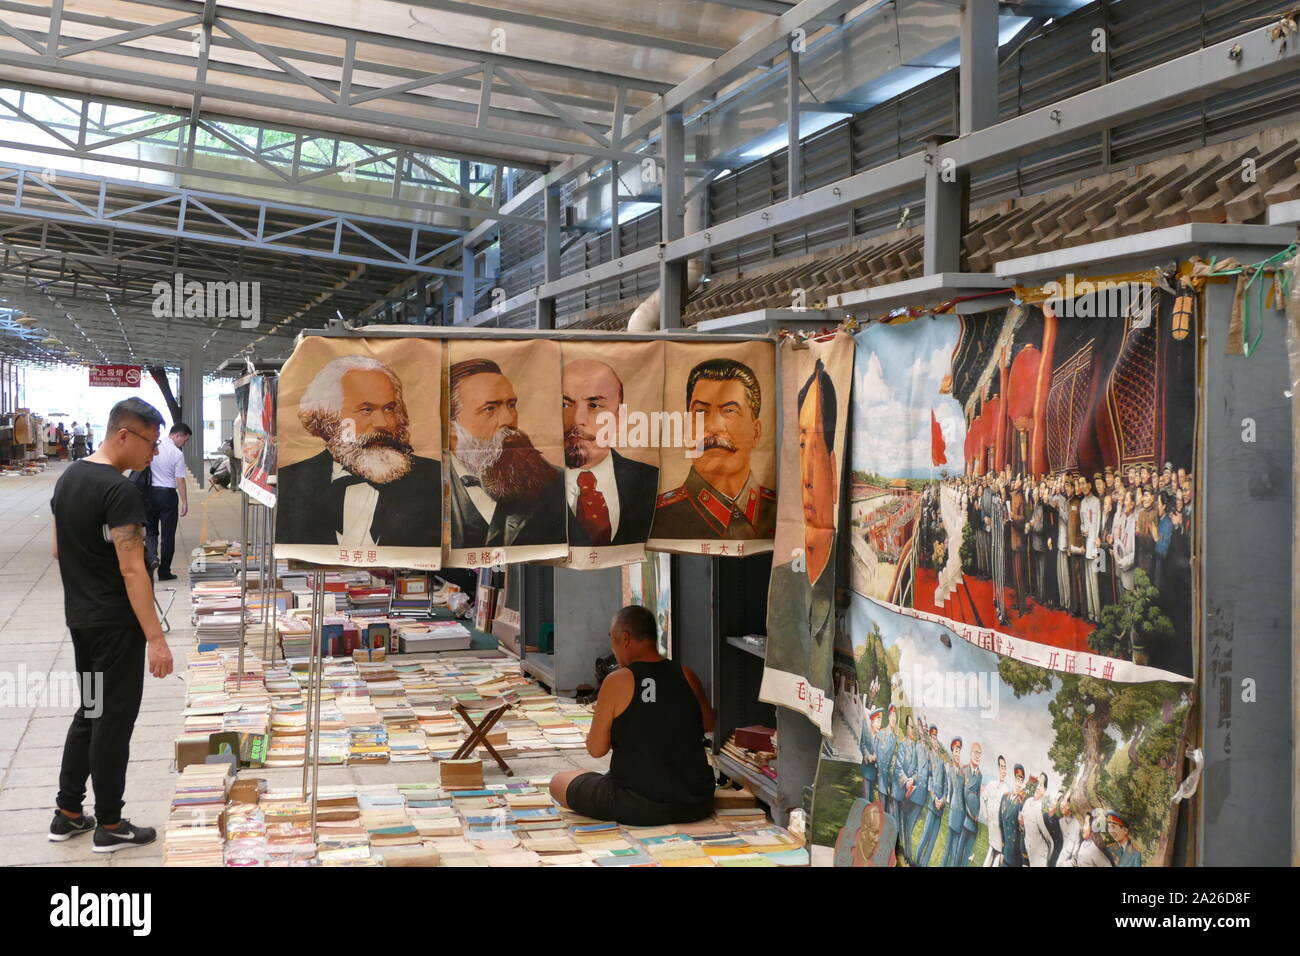 Ritratti di Karl Marx, Friederich Engels, Vladimir Lenin e Joseph Stalin in un mercato cinese. Questi simboli popolari del comunismo sedersi accanto a un ritratto del Presidente Mao Foto Stock